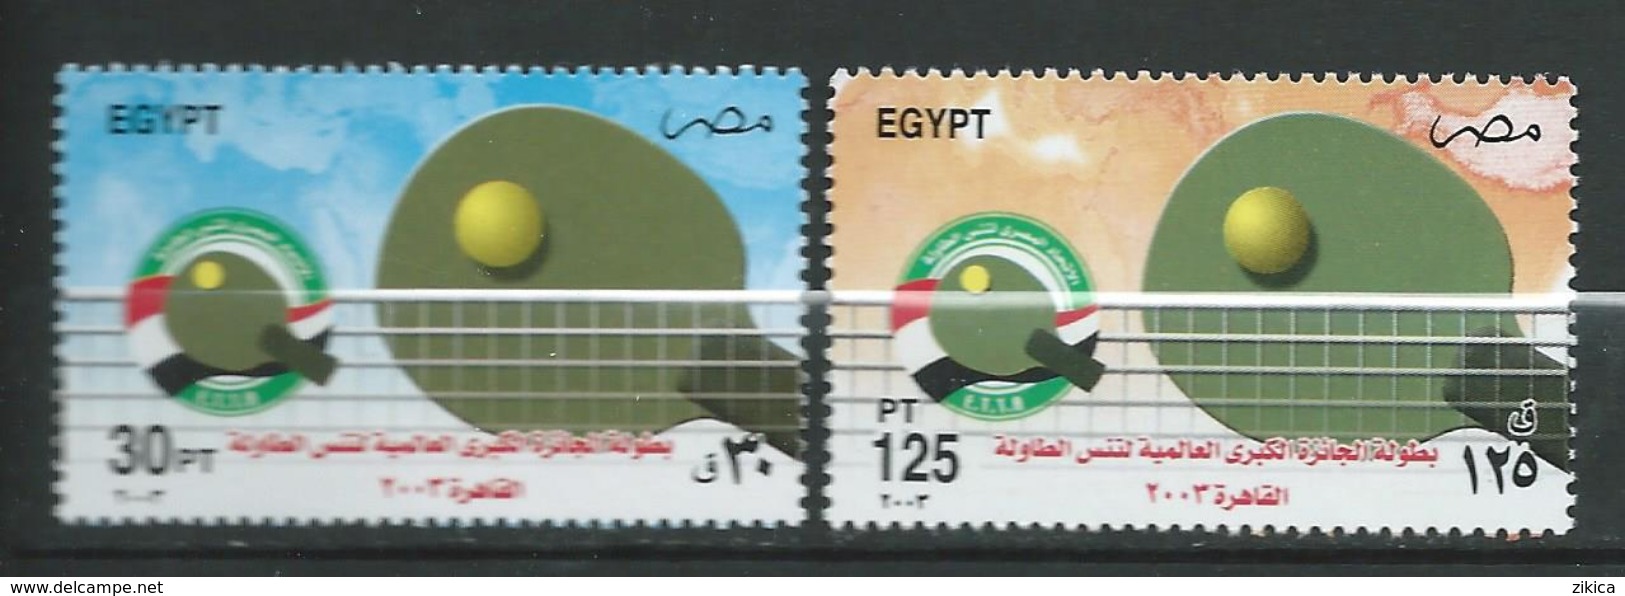 Egypt 2003 Egypt International Open Table Tennis Championship, Cairo. Sport. MNH - Ungebraucht